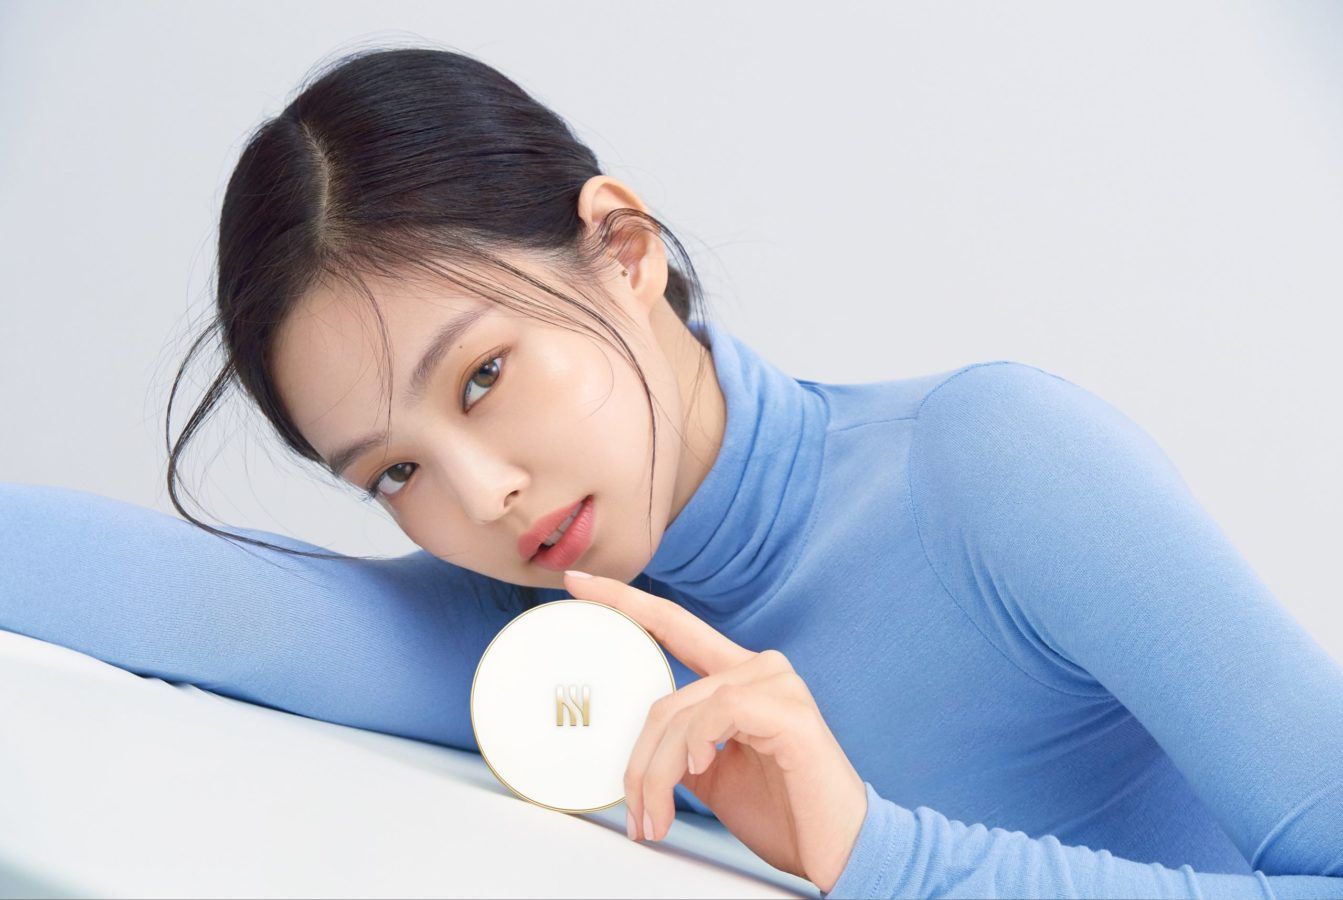 Korean Beauty Brand - HERA